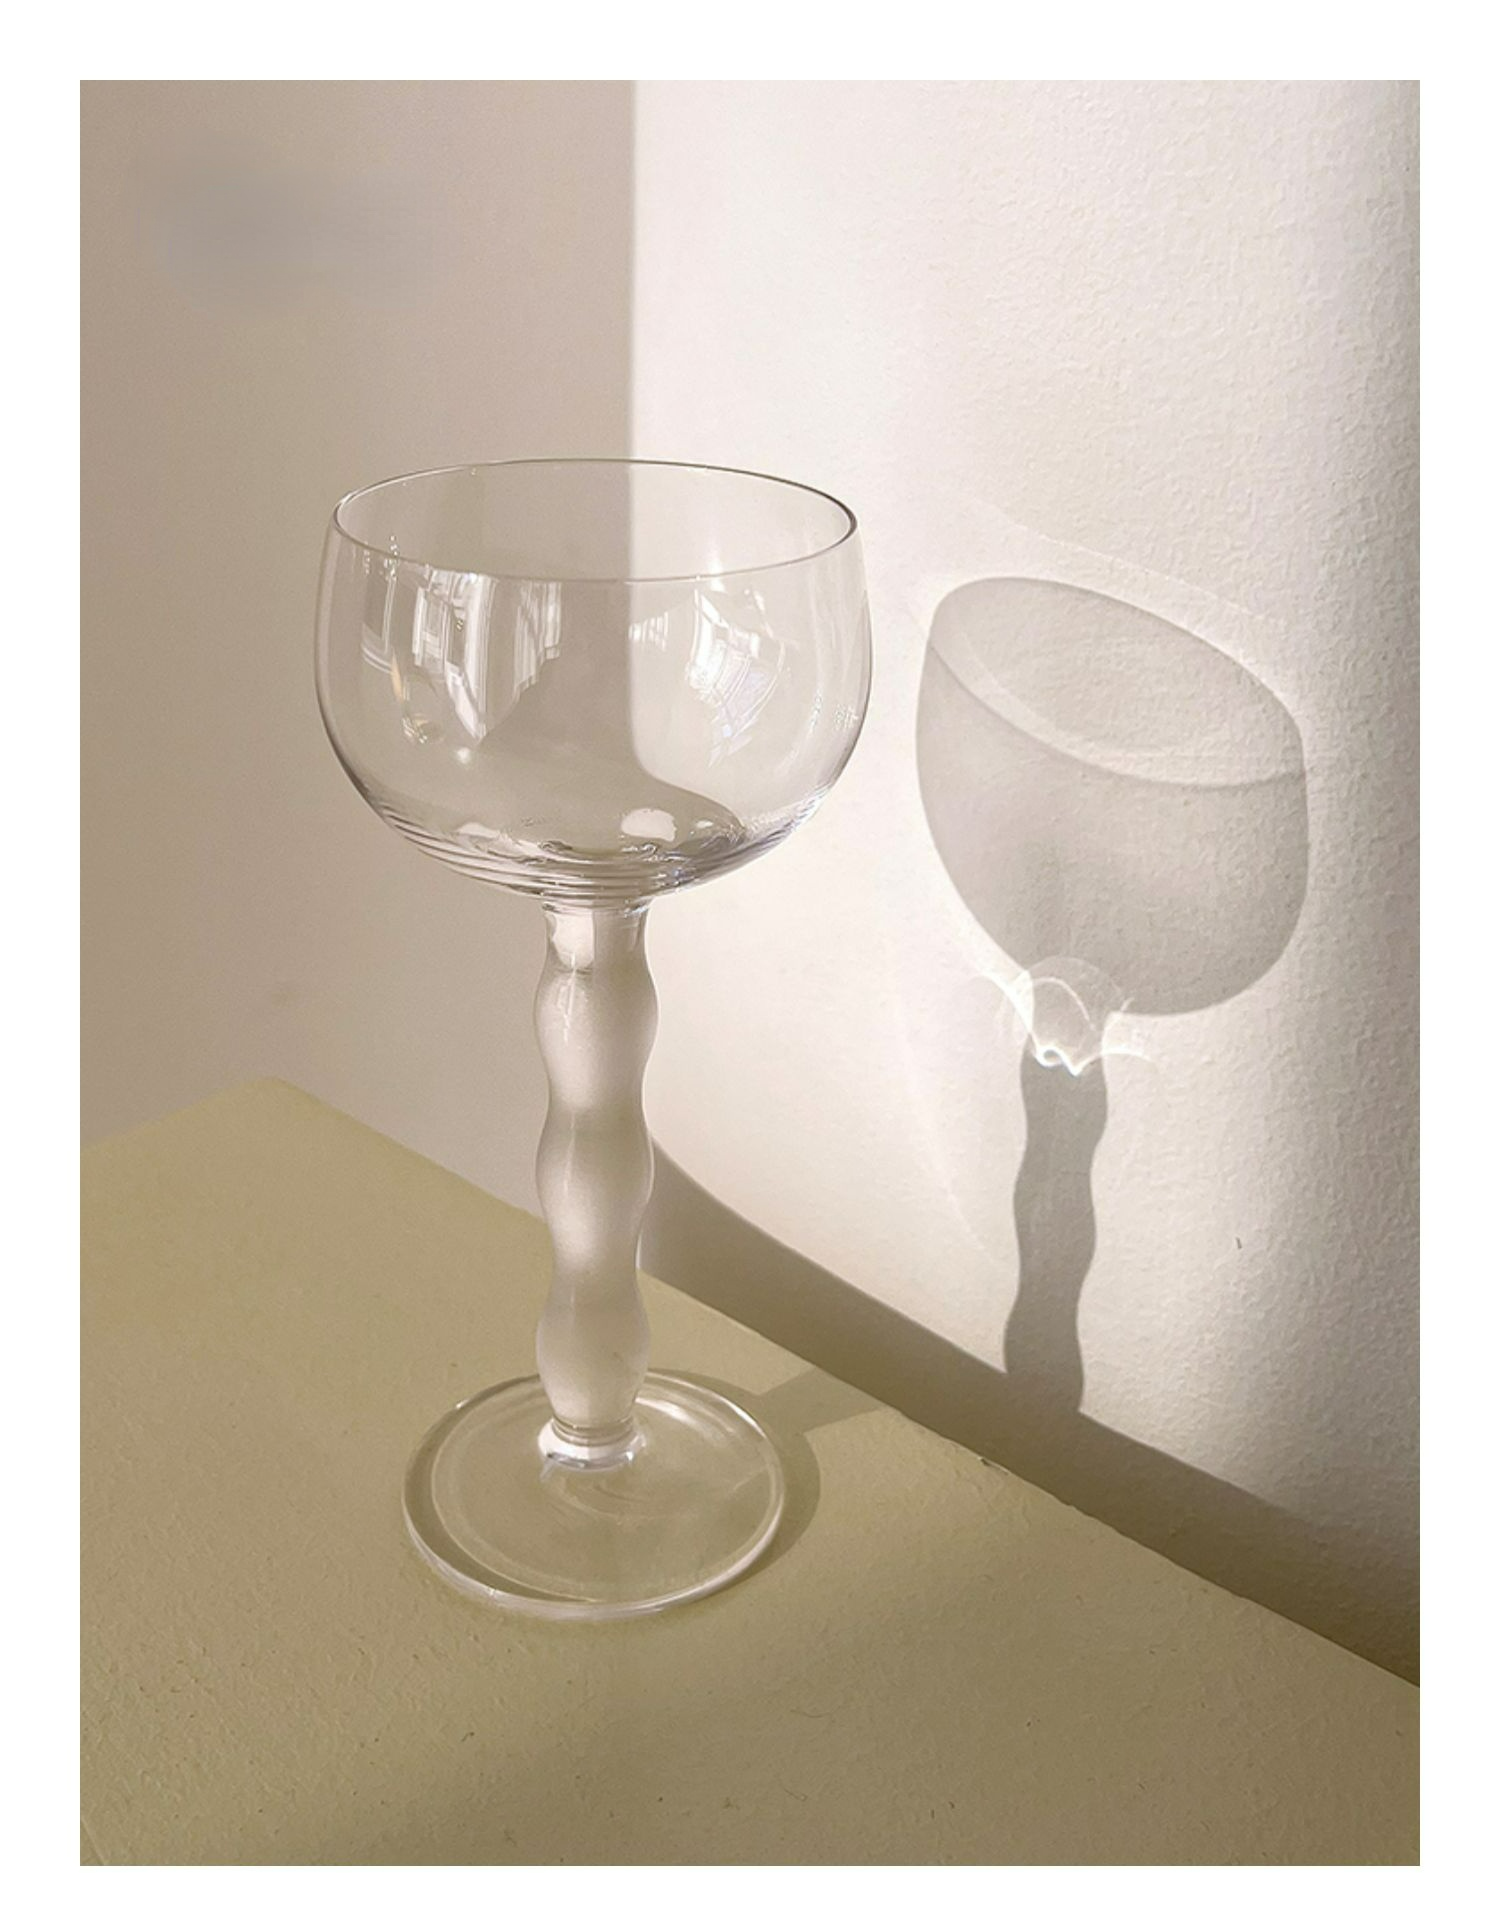 Drinking glasses, Water glasses set of 12 - Grande-S, 190ml 